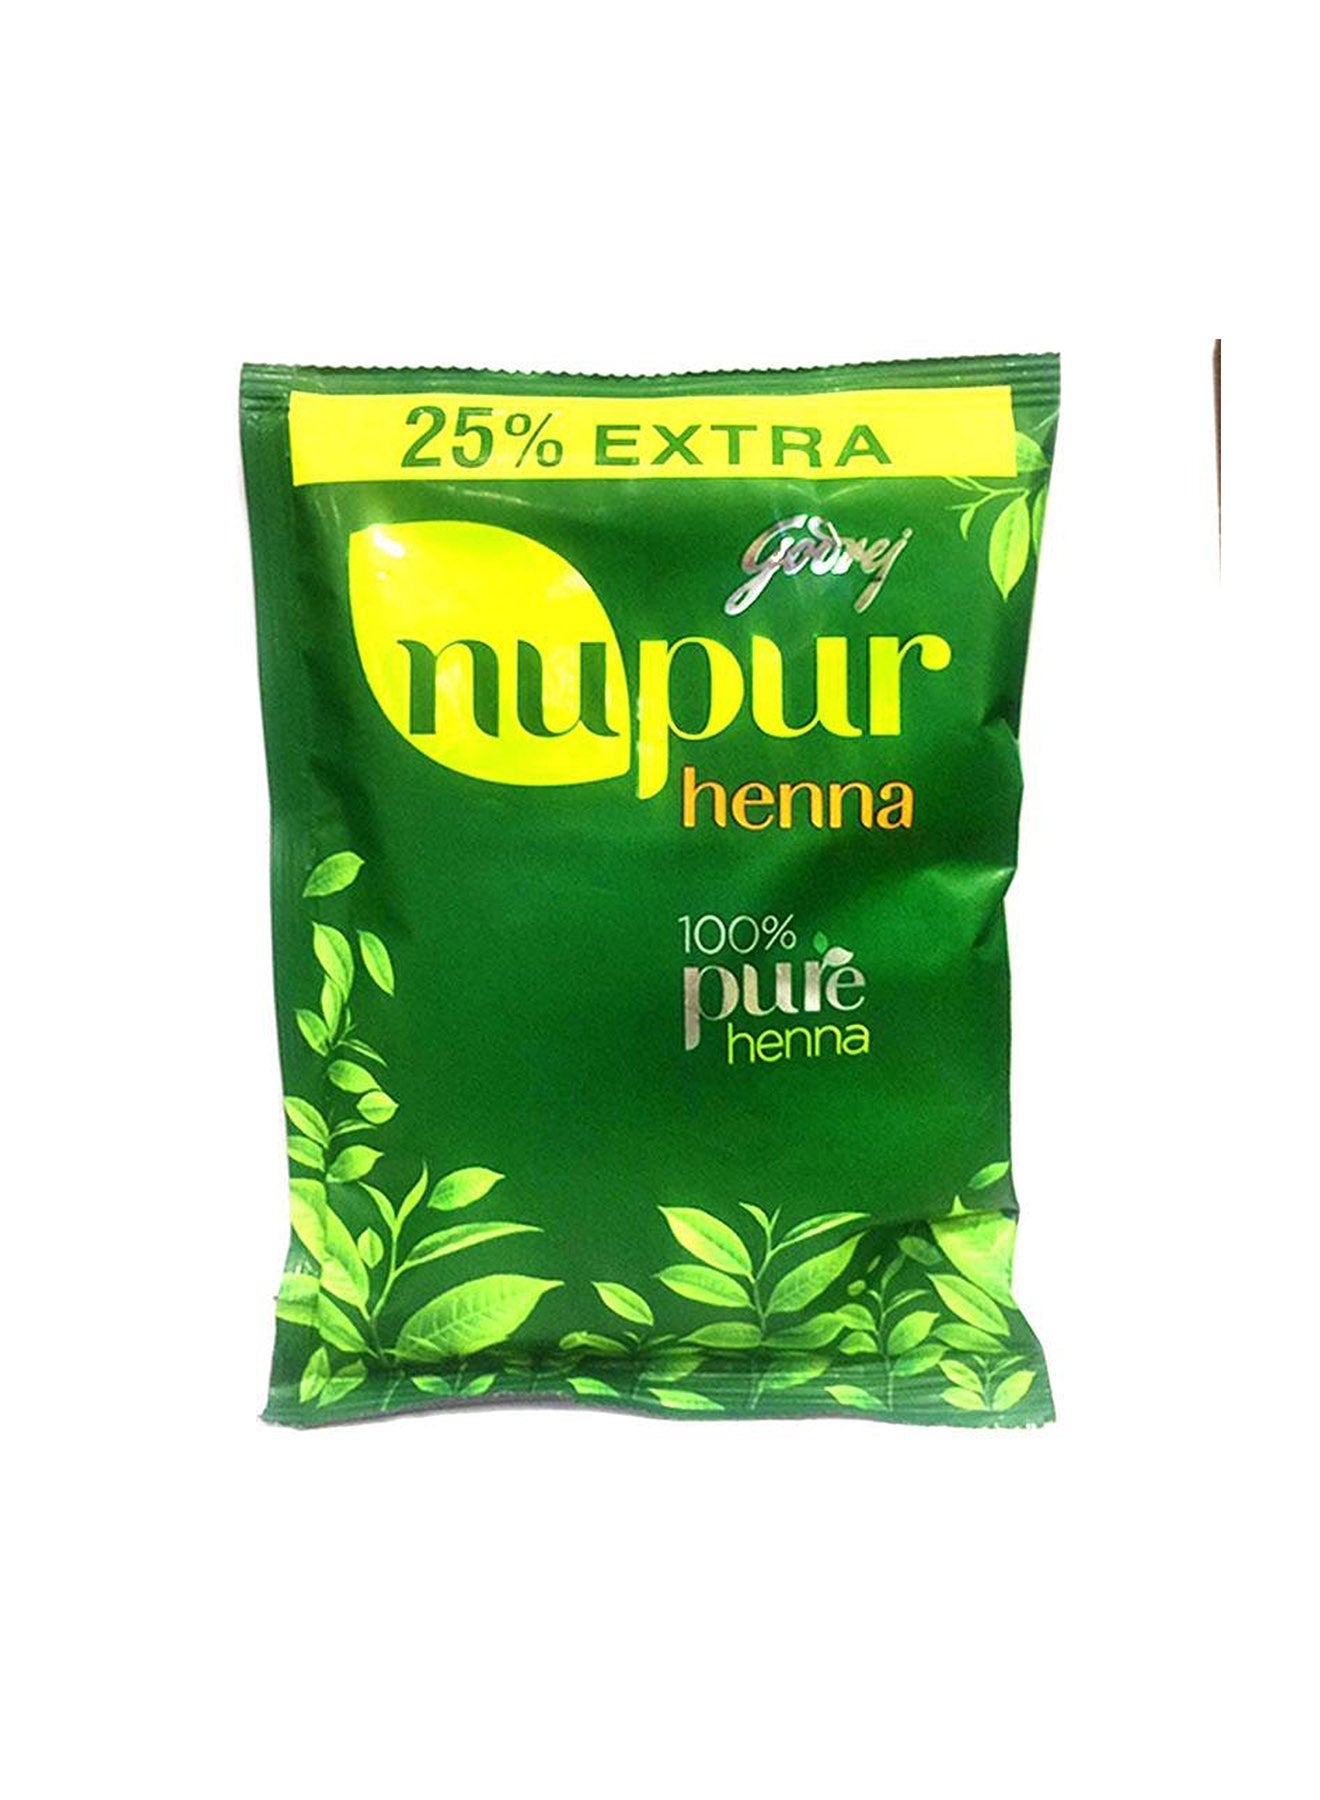 Godrej Nupur Henna 100 Pure Henna 25 Extra 150g Value Pack of 12 